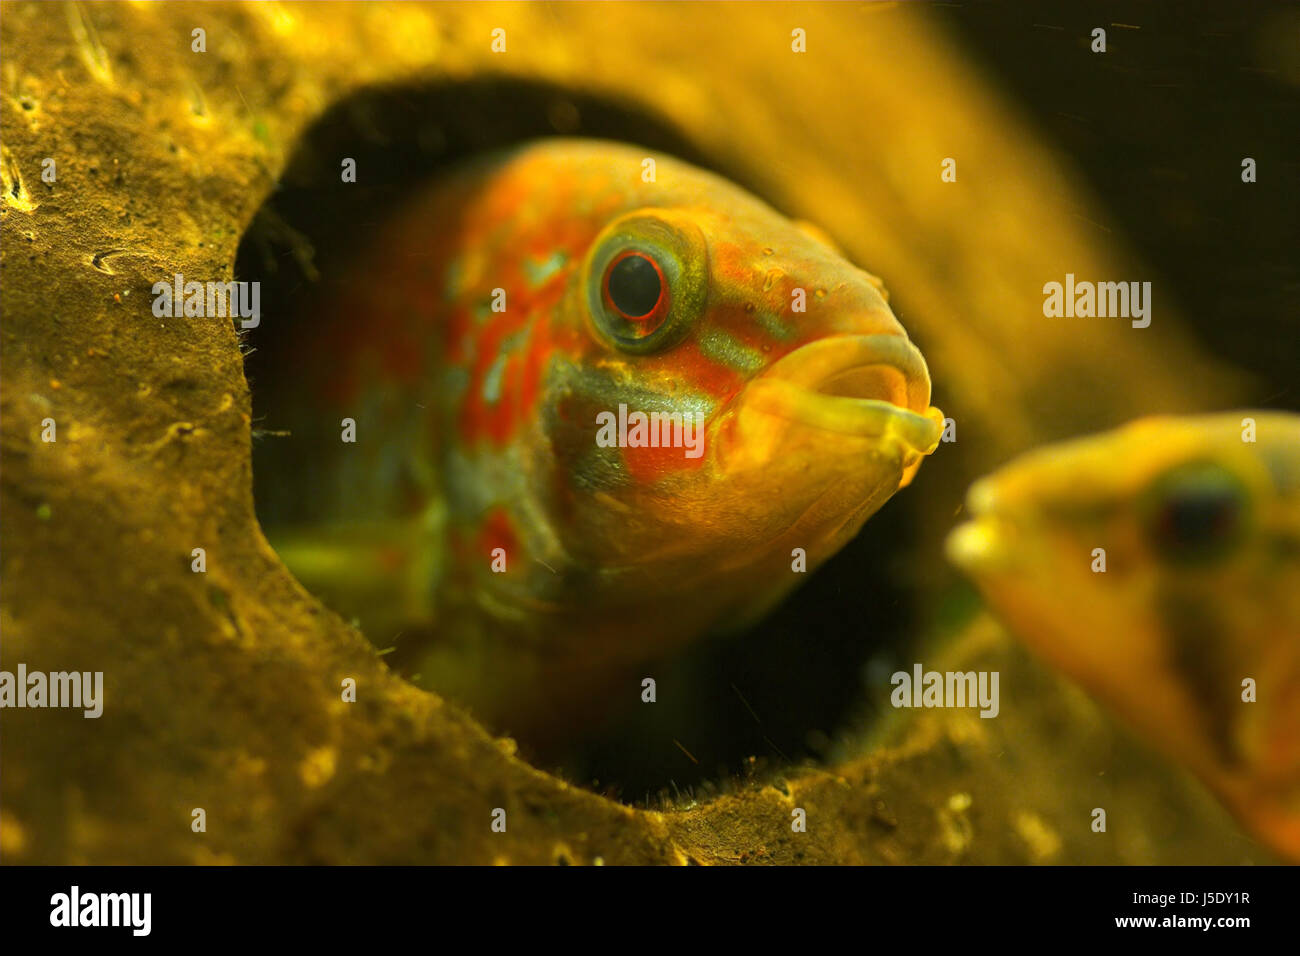 Costruzione casa grotta curiosità acquario di pesci pesci maschi pesce giocattolo razza femmina Foto Stock